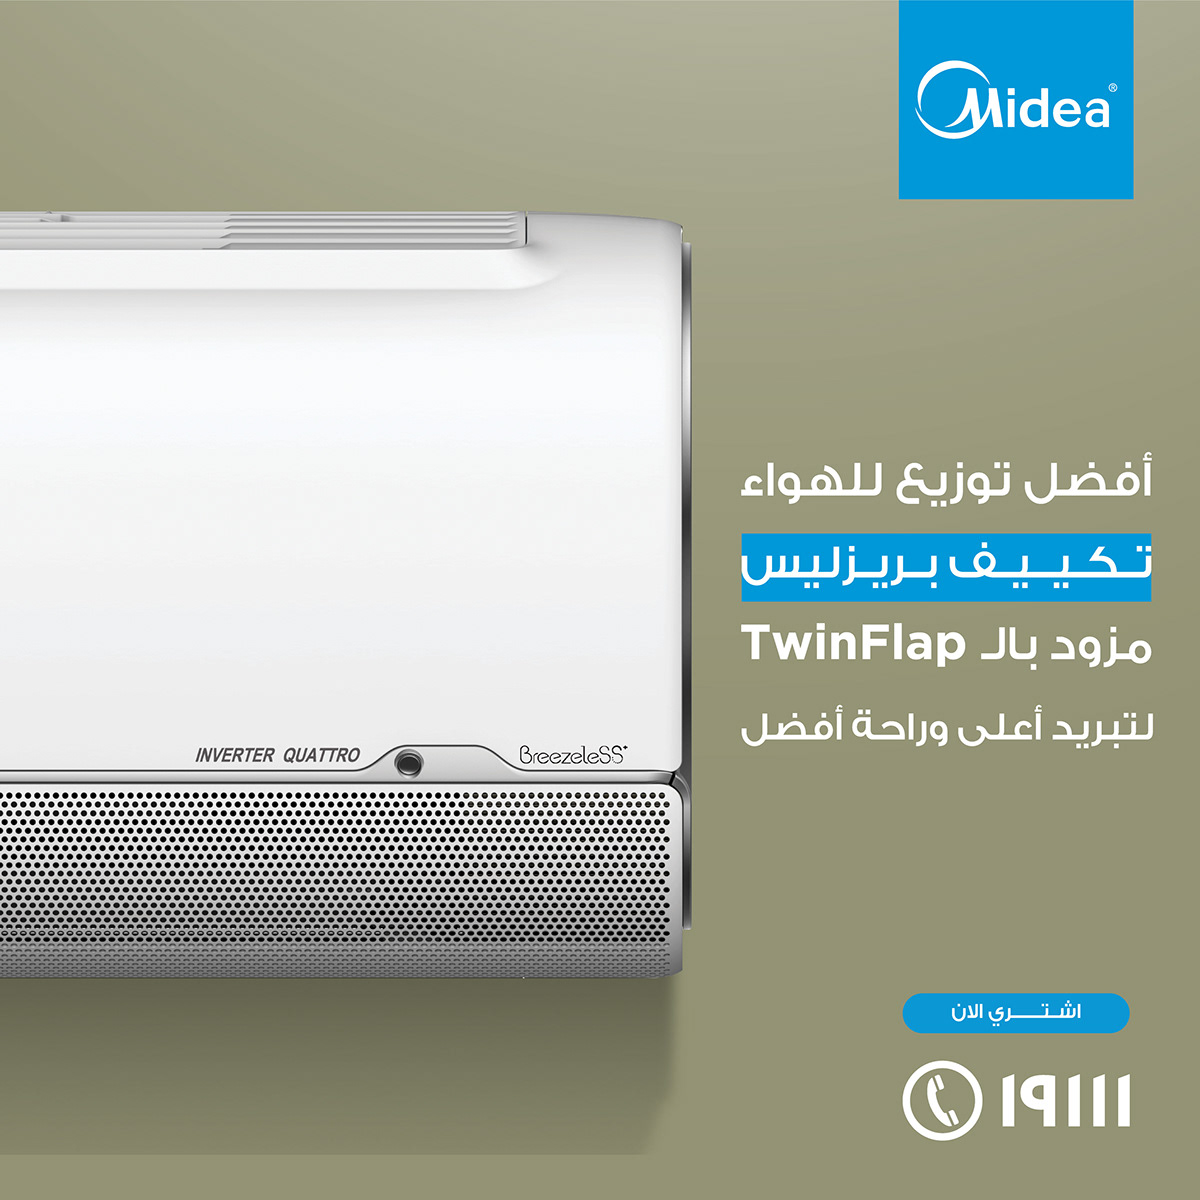 AC Air conditioner design graphic post social media